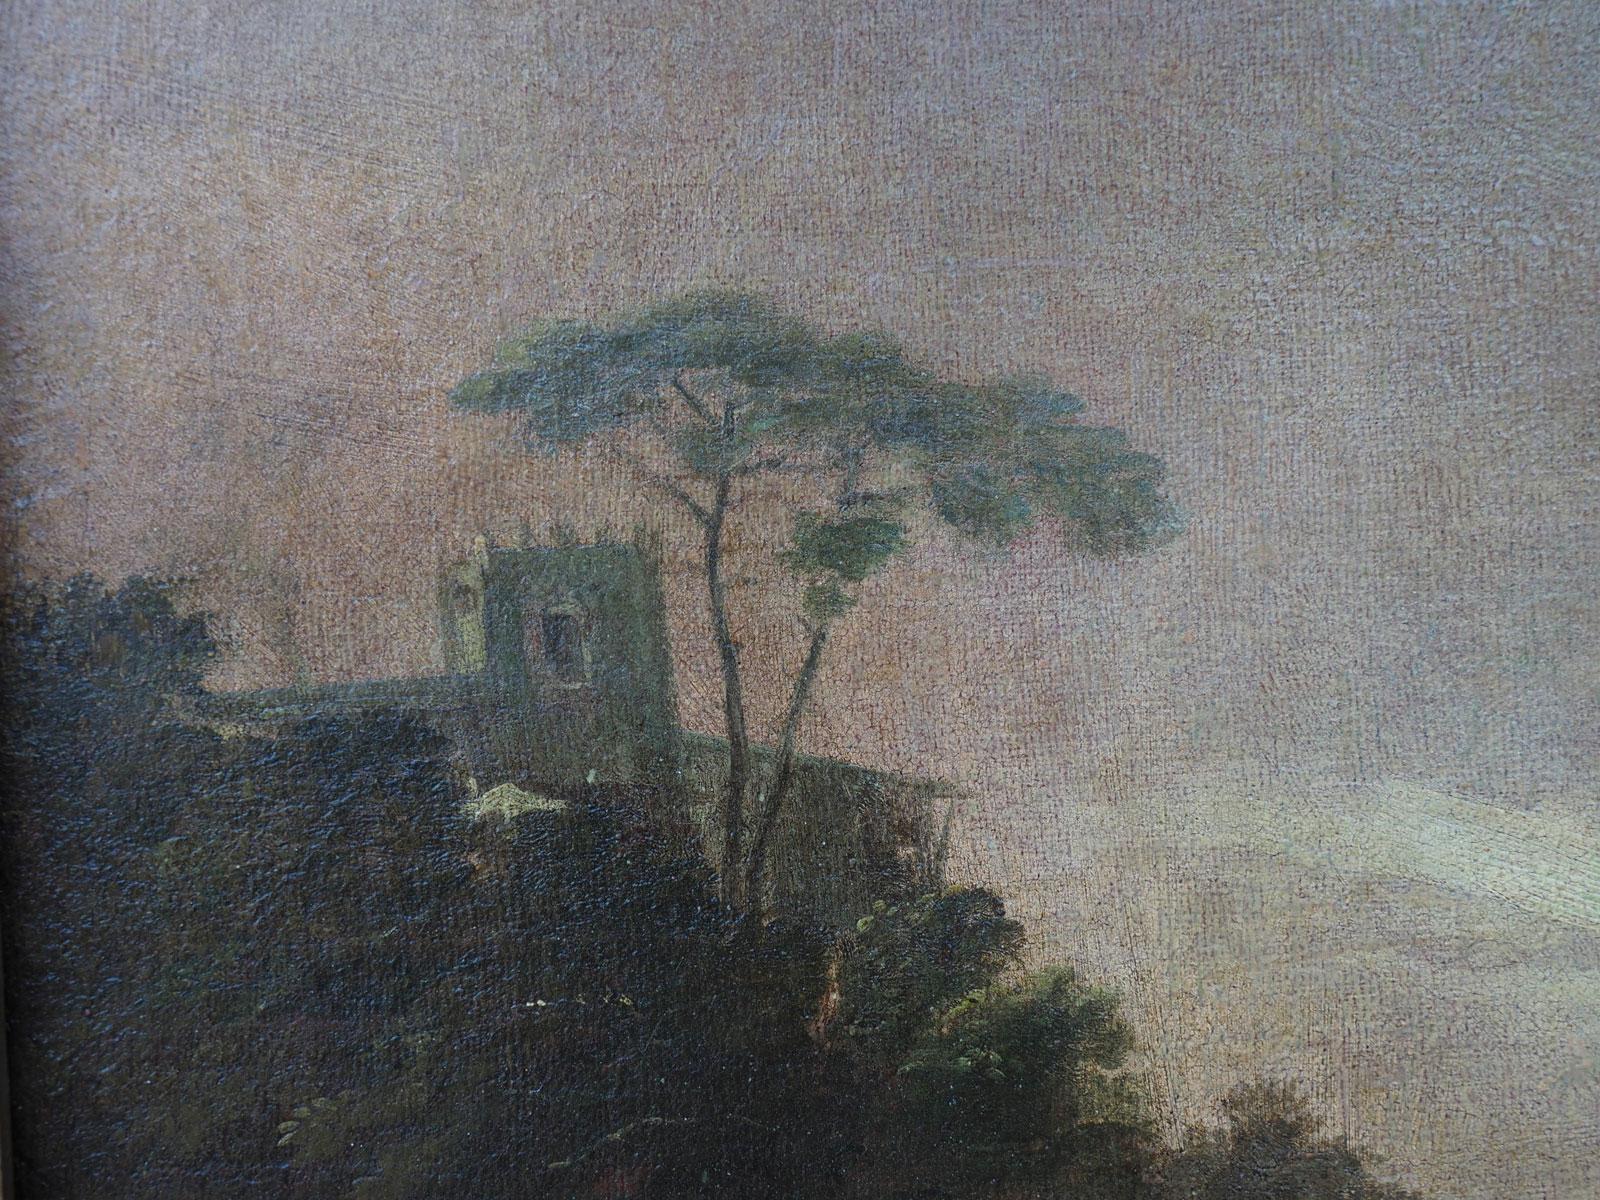 Paysage au crépuscule avec personnages par un disciple de MarCo - XVIIIe siècle
Cette peinture à l'huile sur toile représente un paysage typique de la campagne vénitienne au crépuscule. 
Le choix chromatique, à savoir la prédominance de la palette